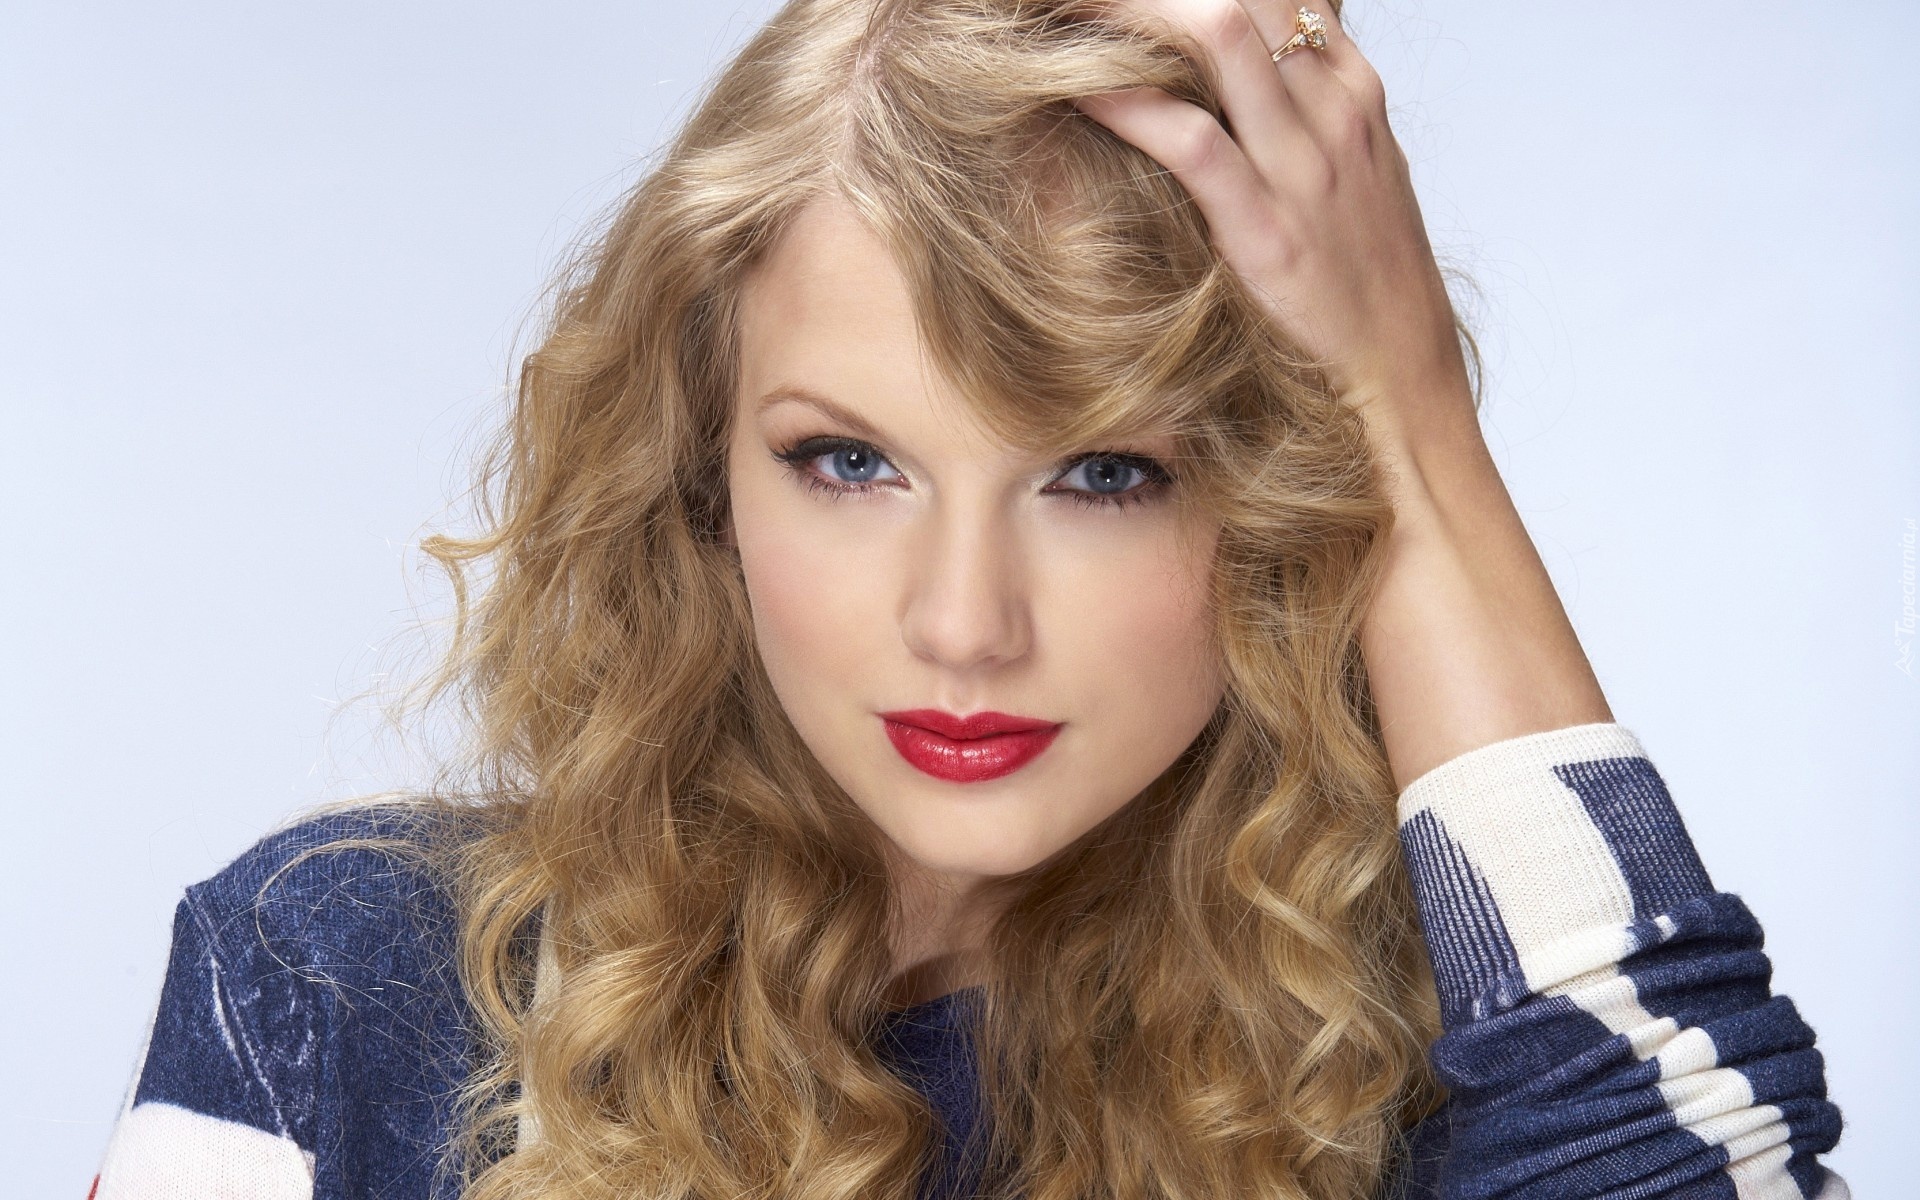 Taylor Swift, Twarz, Włosy, Oczy